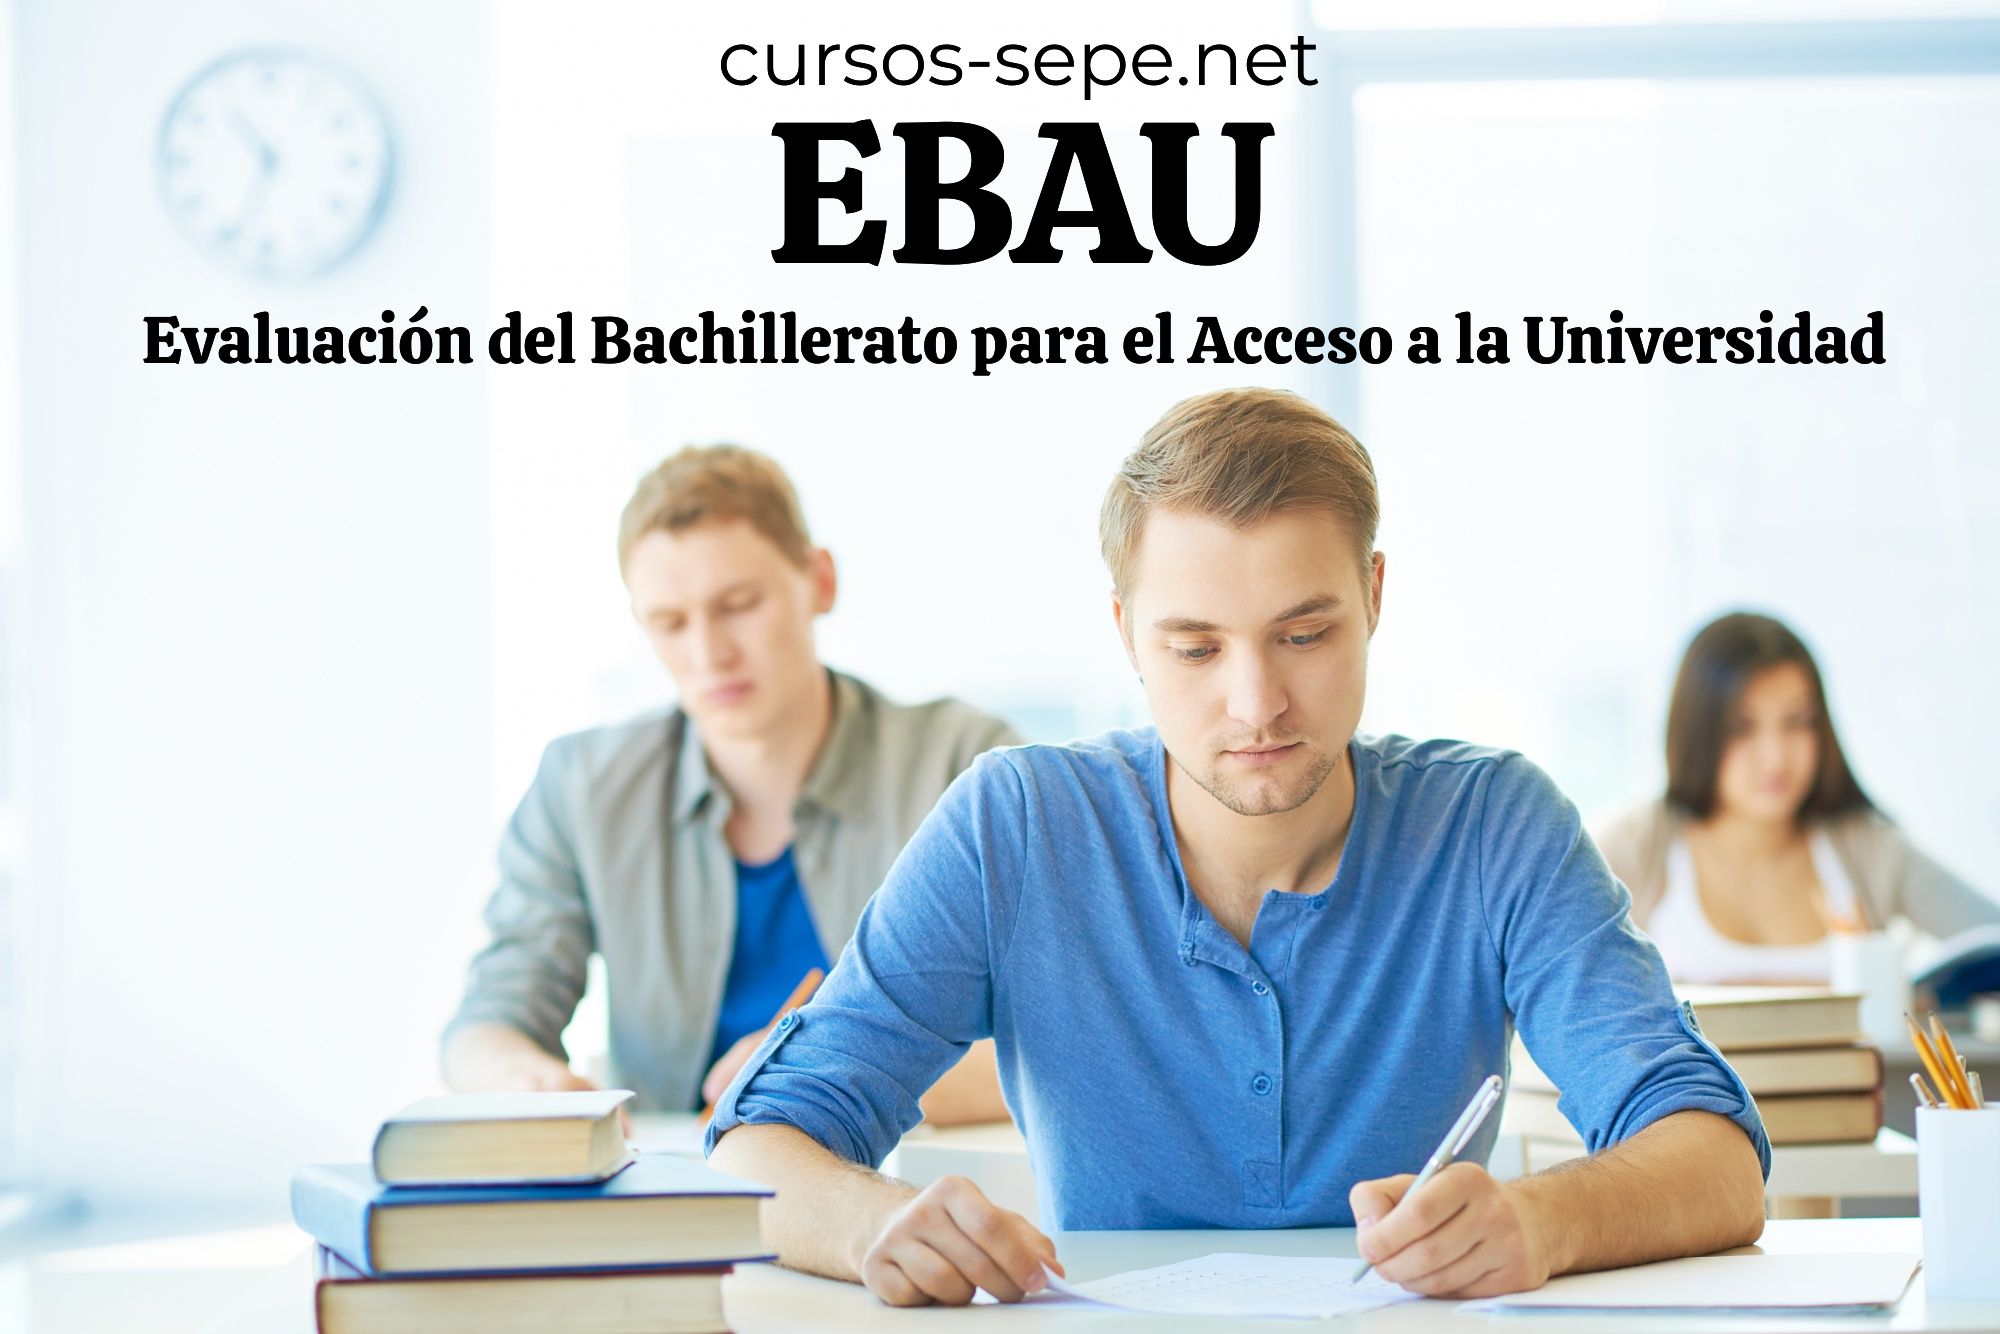 Realiza la EBAU al terminar el Bachillerato para cursar estudios universitarios homologados.